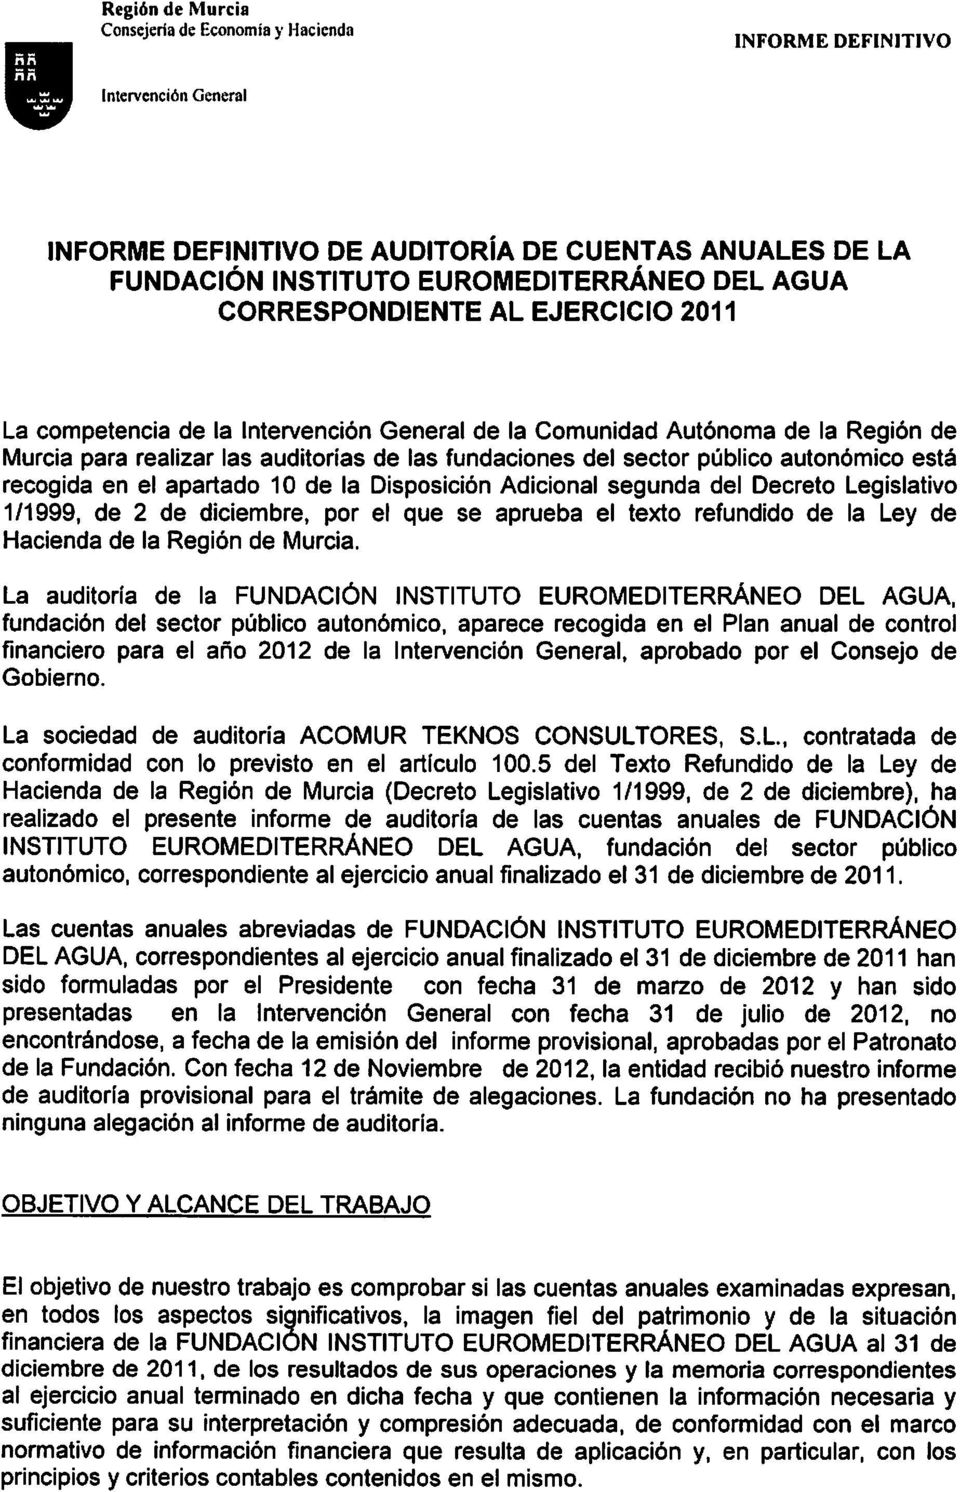 en el apartado 10 de la Disposición Adicional segunda del Decreto Legislativo 111999, de 2 de diciembre, por el que se aprueba el texto refundido de la Ley de Hacienda de la Región de Murcia.